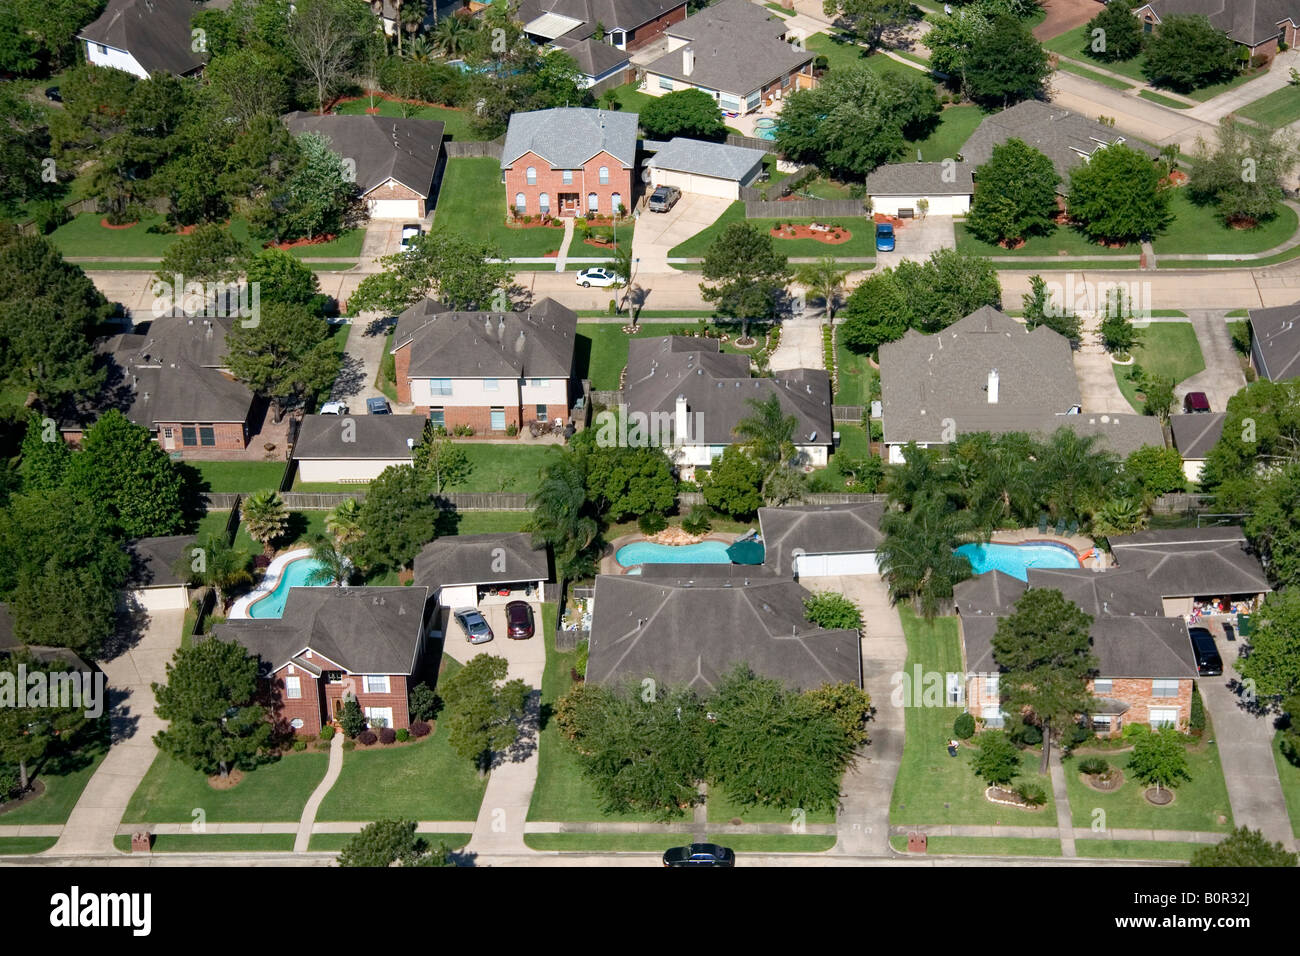 Aerial view of suburban housing near Houston Texas Stock Photo